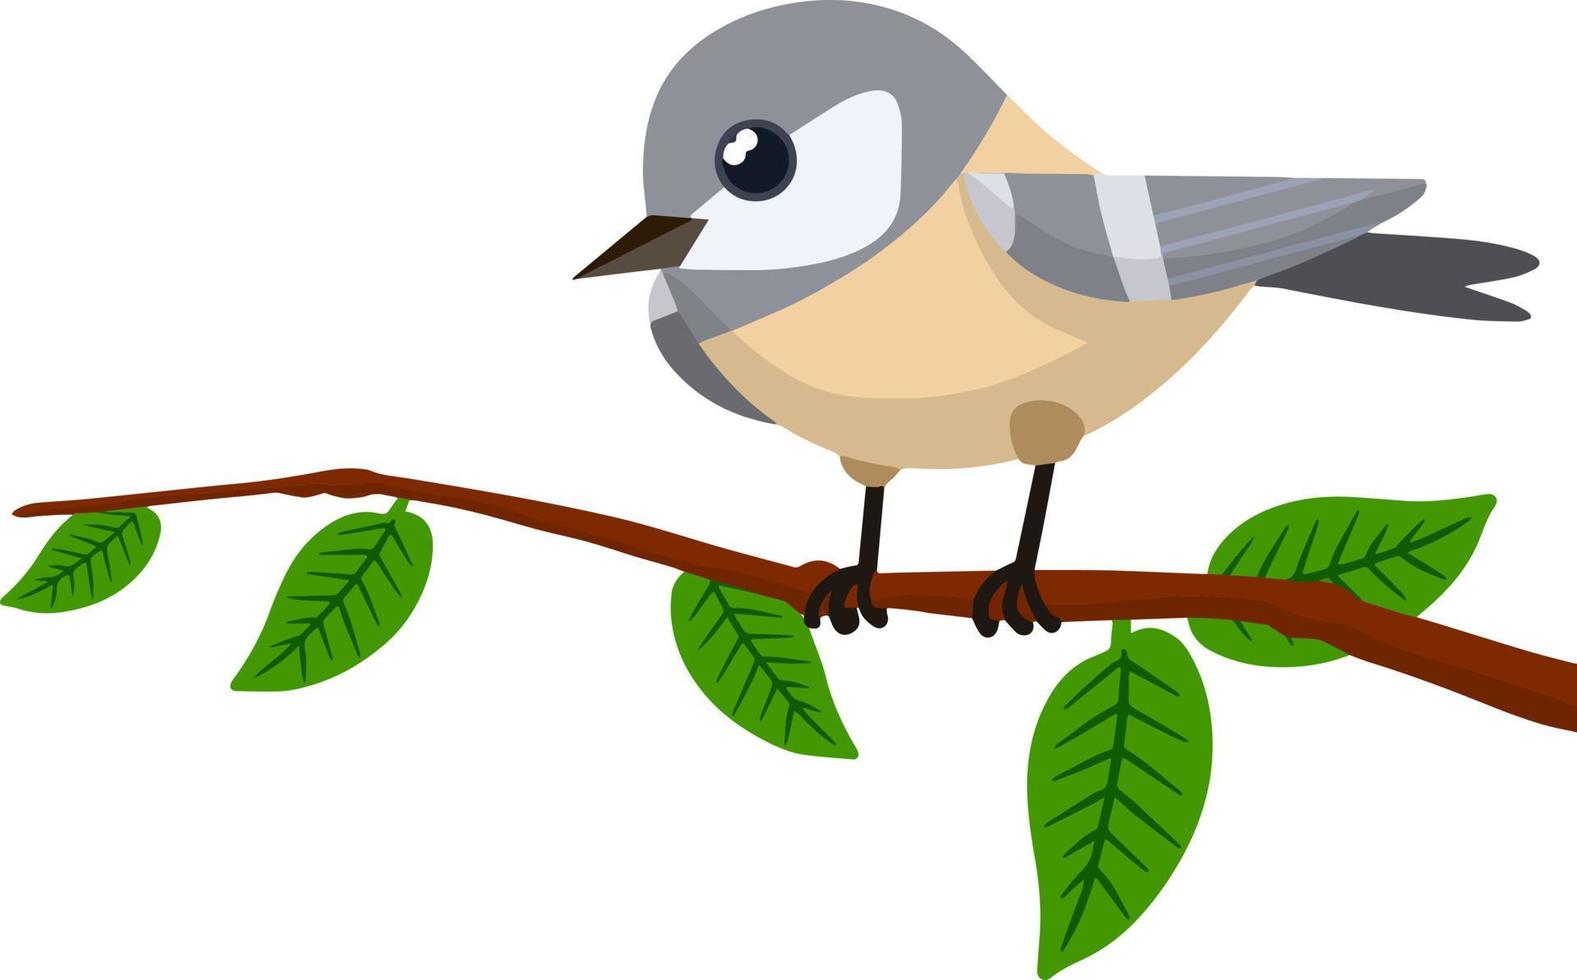 Waldgrauer Vogel, der auf einem Baumast sitzt. süßes tier mit flügeln und grünen blättern. Illustration für Grußkarten. flache illustration der karikatur vektor